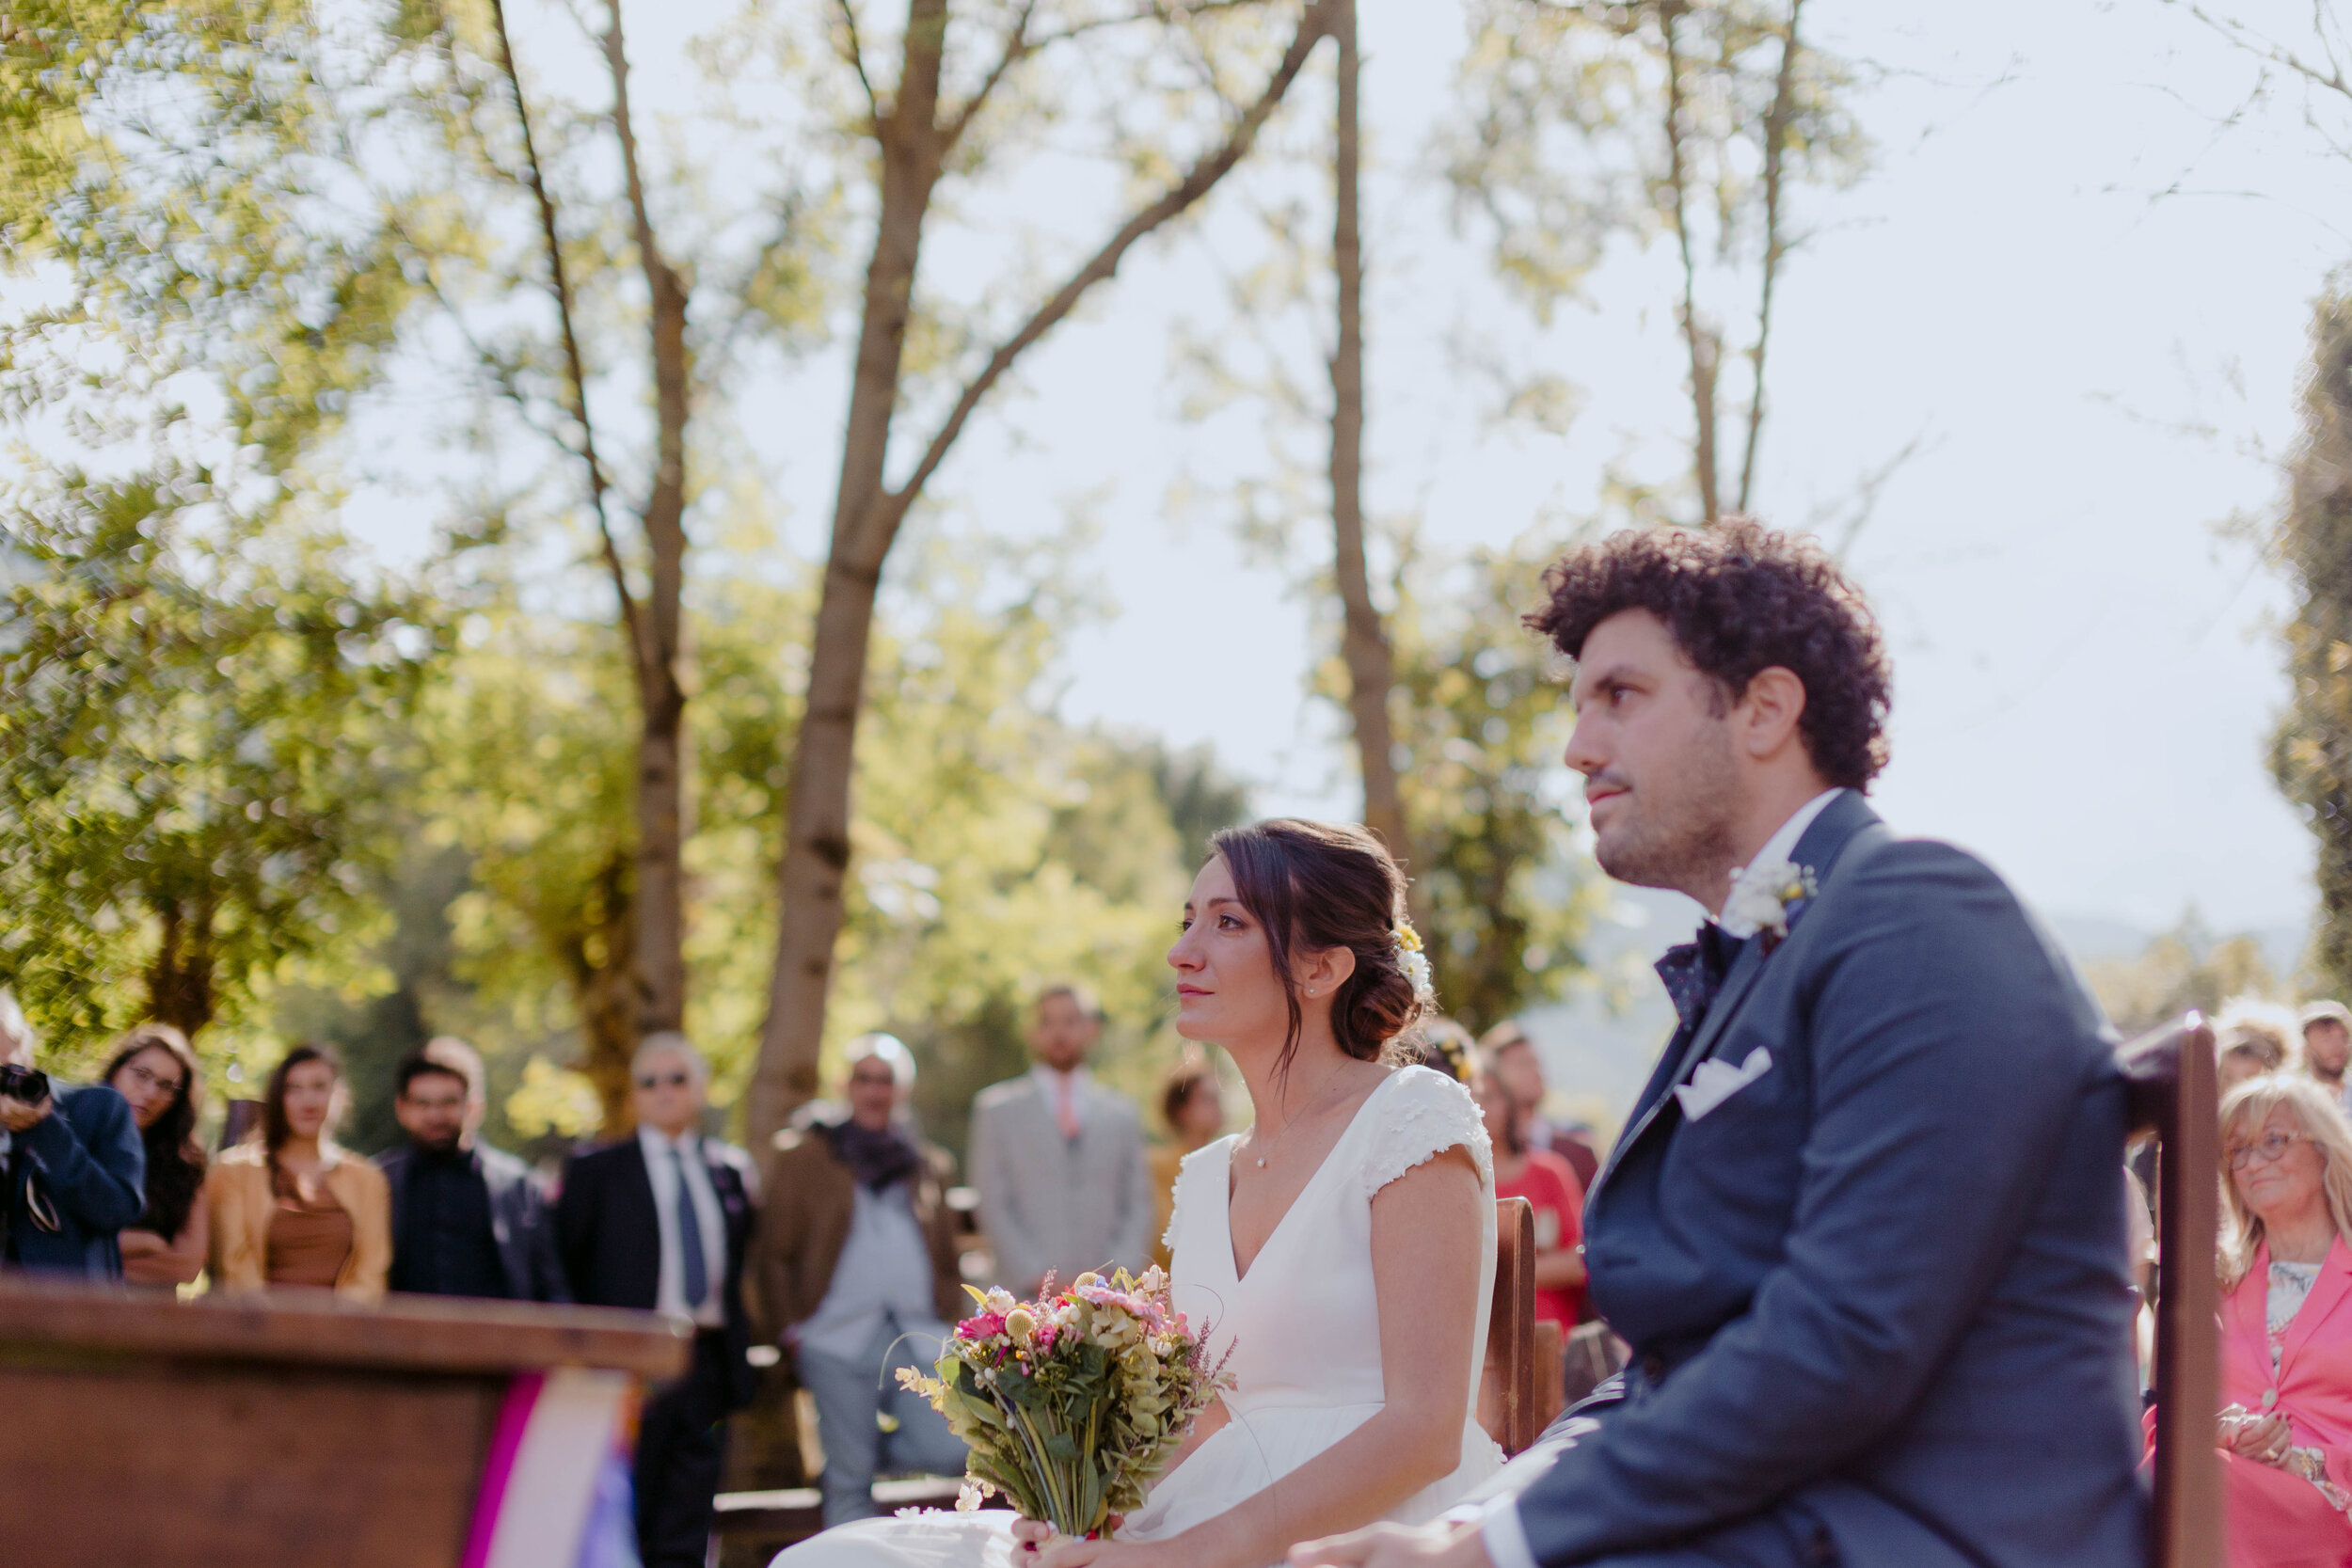 036 - Matrimonio in Val di Susa - Miriam Callegari Fotografa.JPG